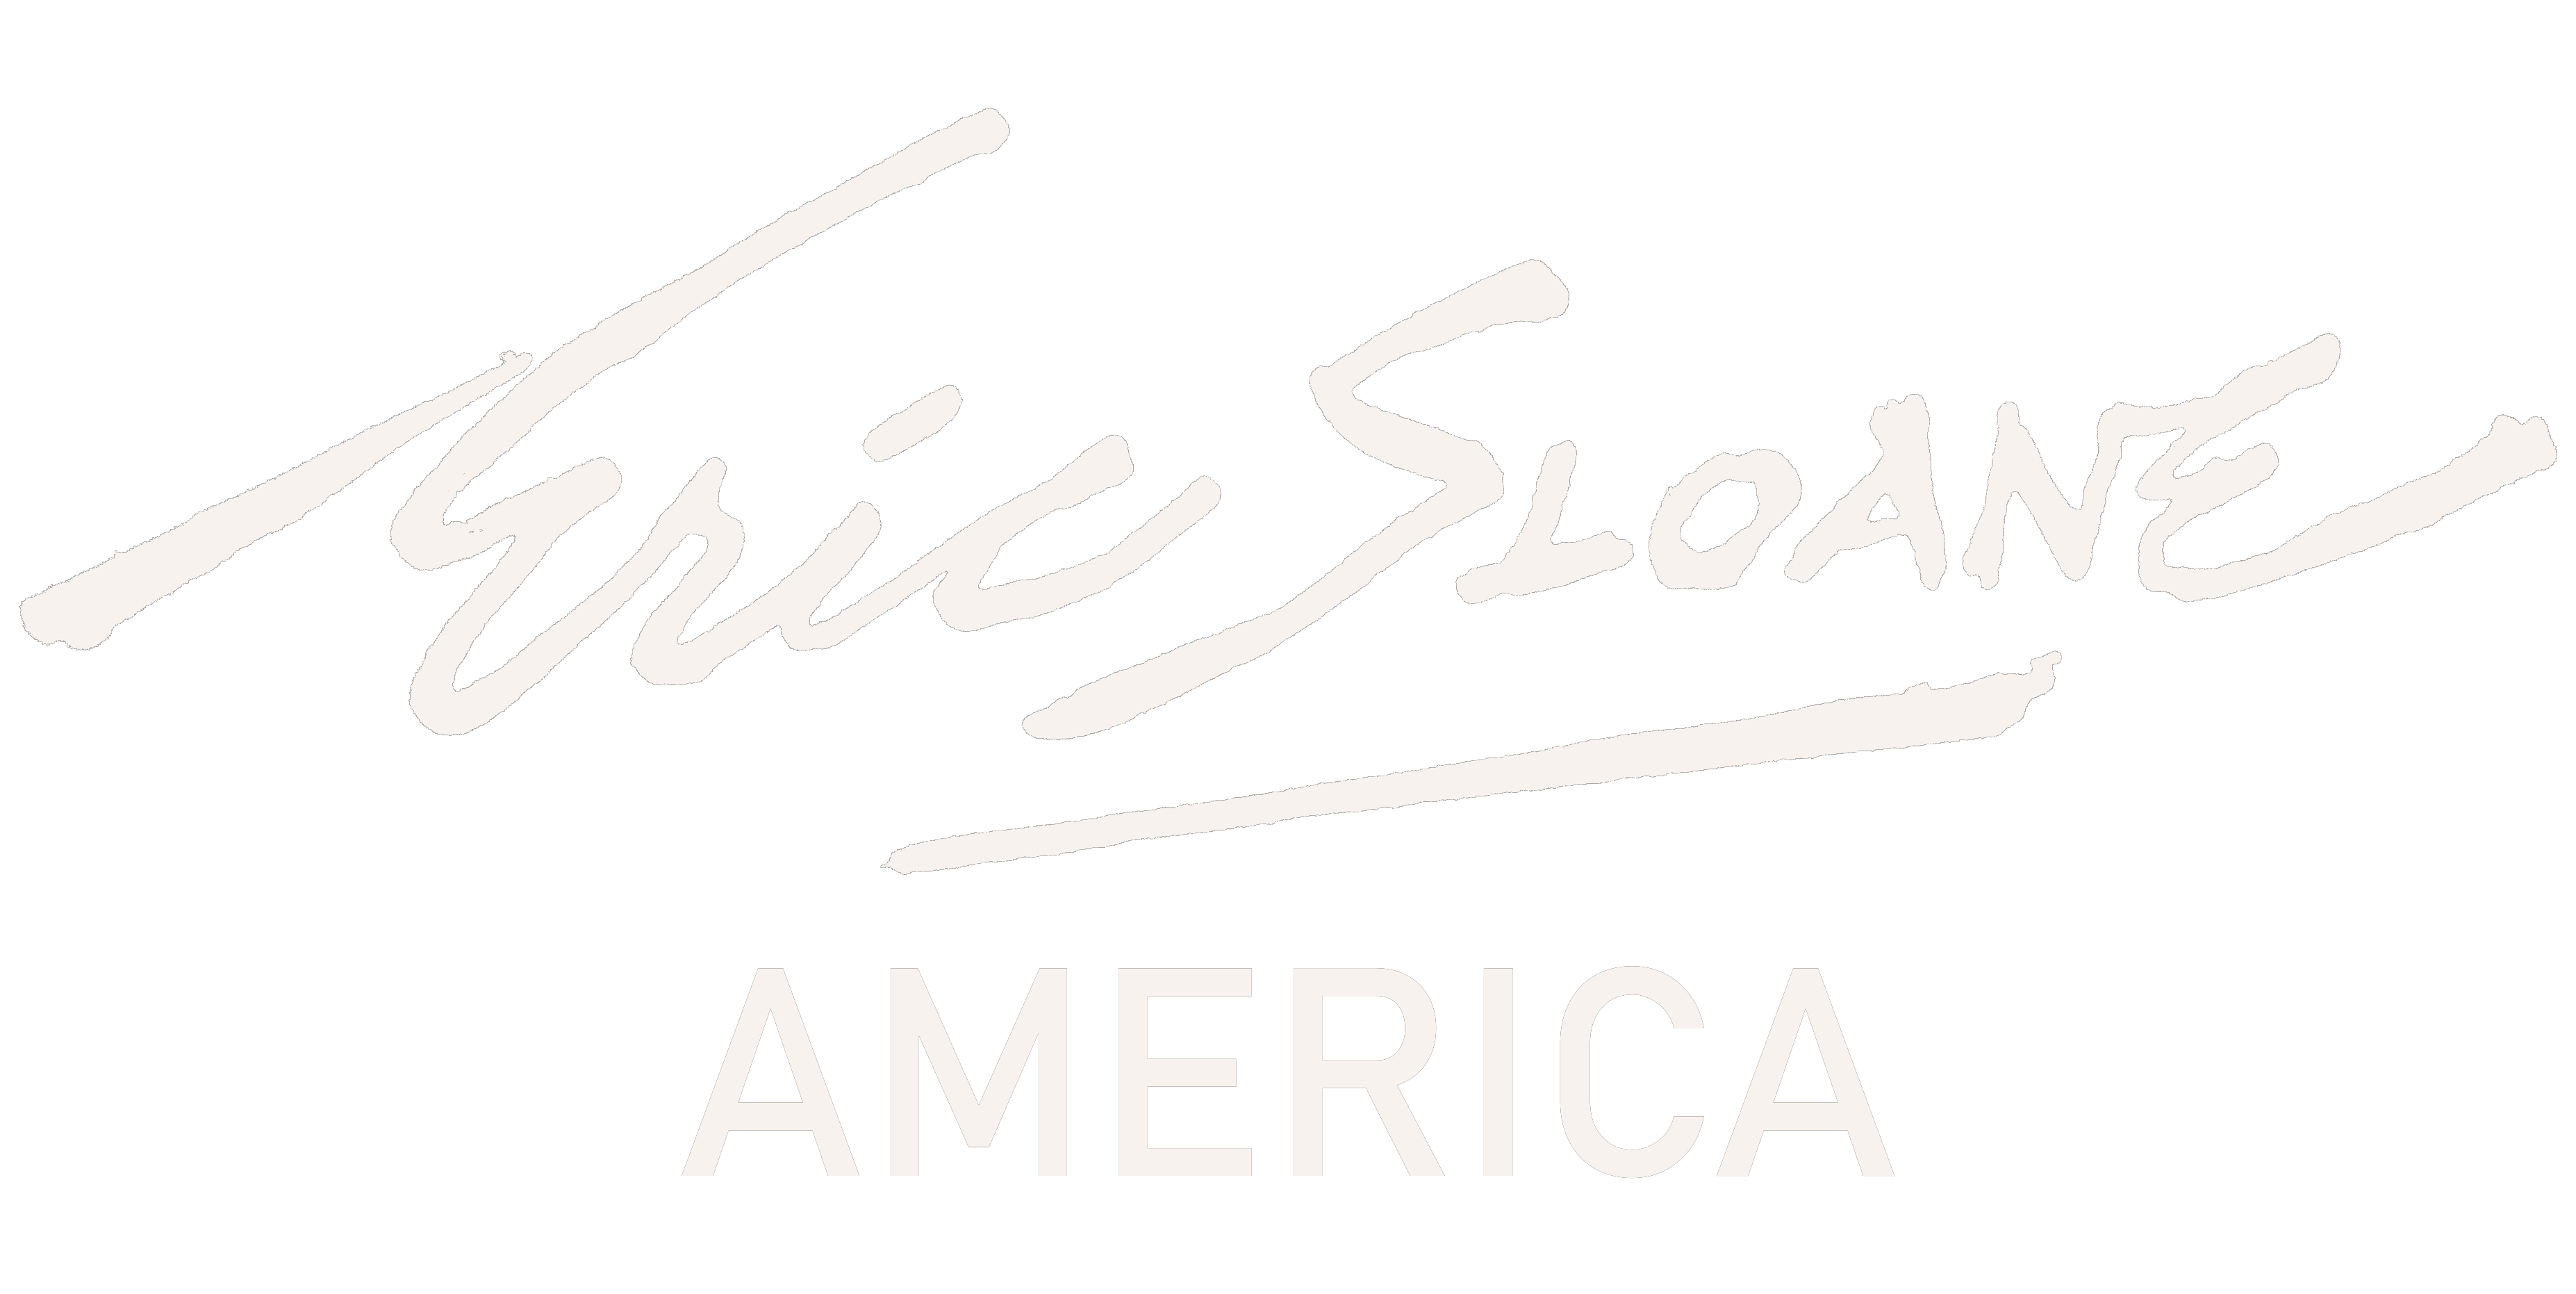 Eric Sloane America